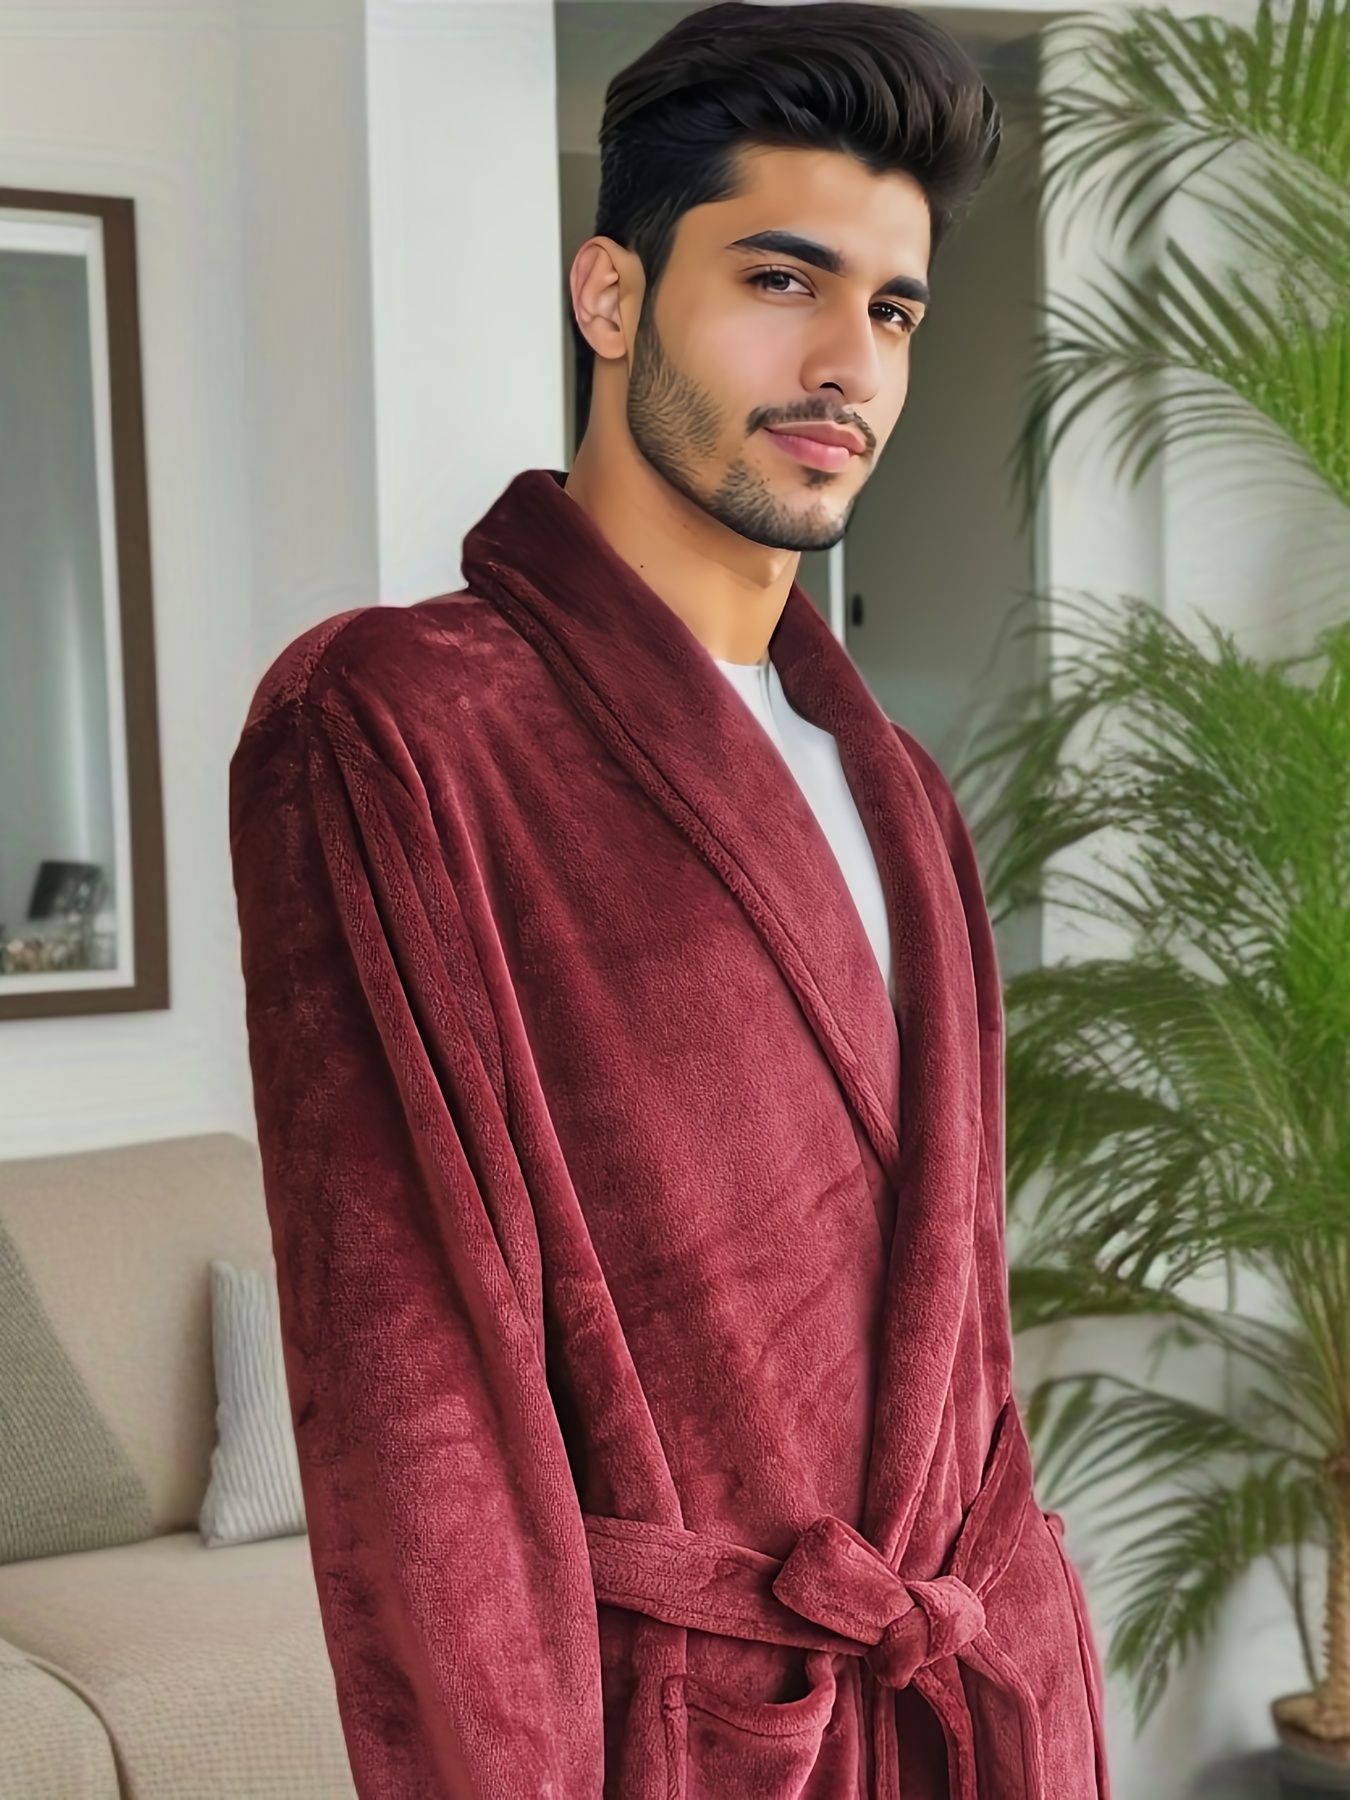 Men's Purple Nightgown Robe Bathrobe Winter Pajamas - Temu